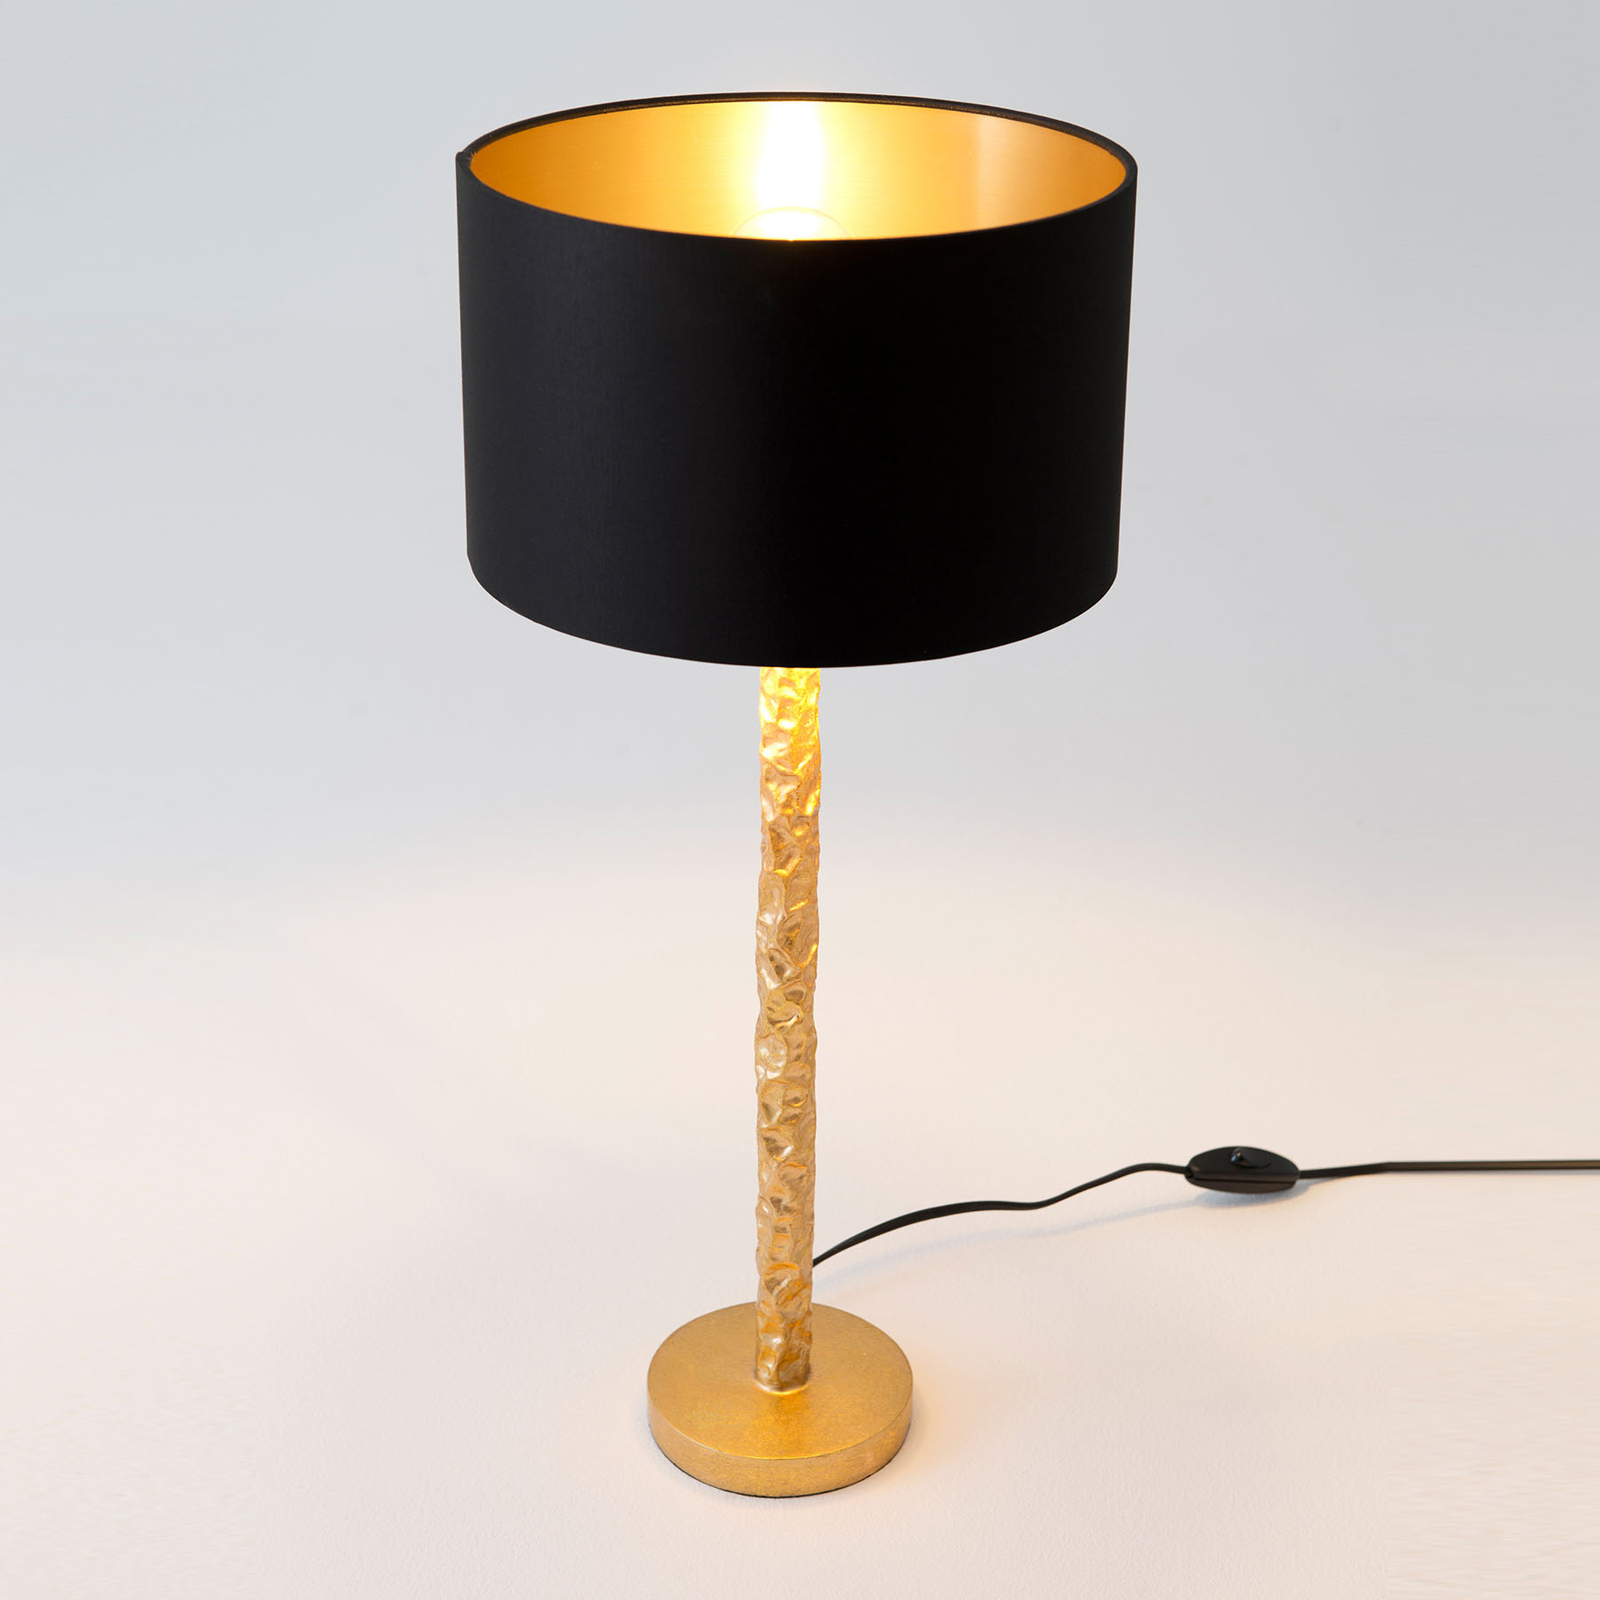 Tischlampe Cancelliere Rotonda schwarz/gold 57 cm